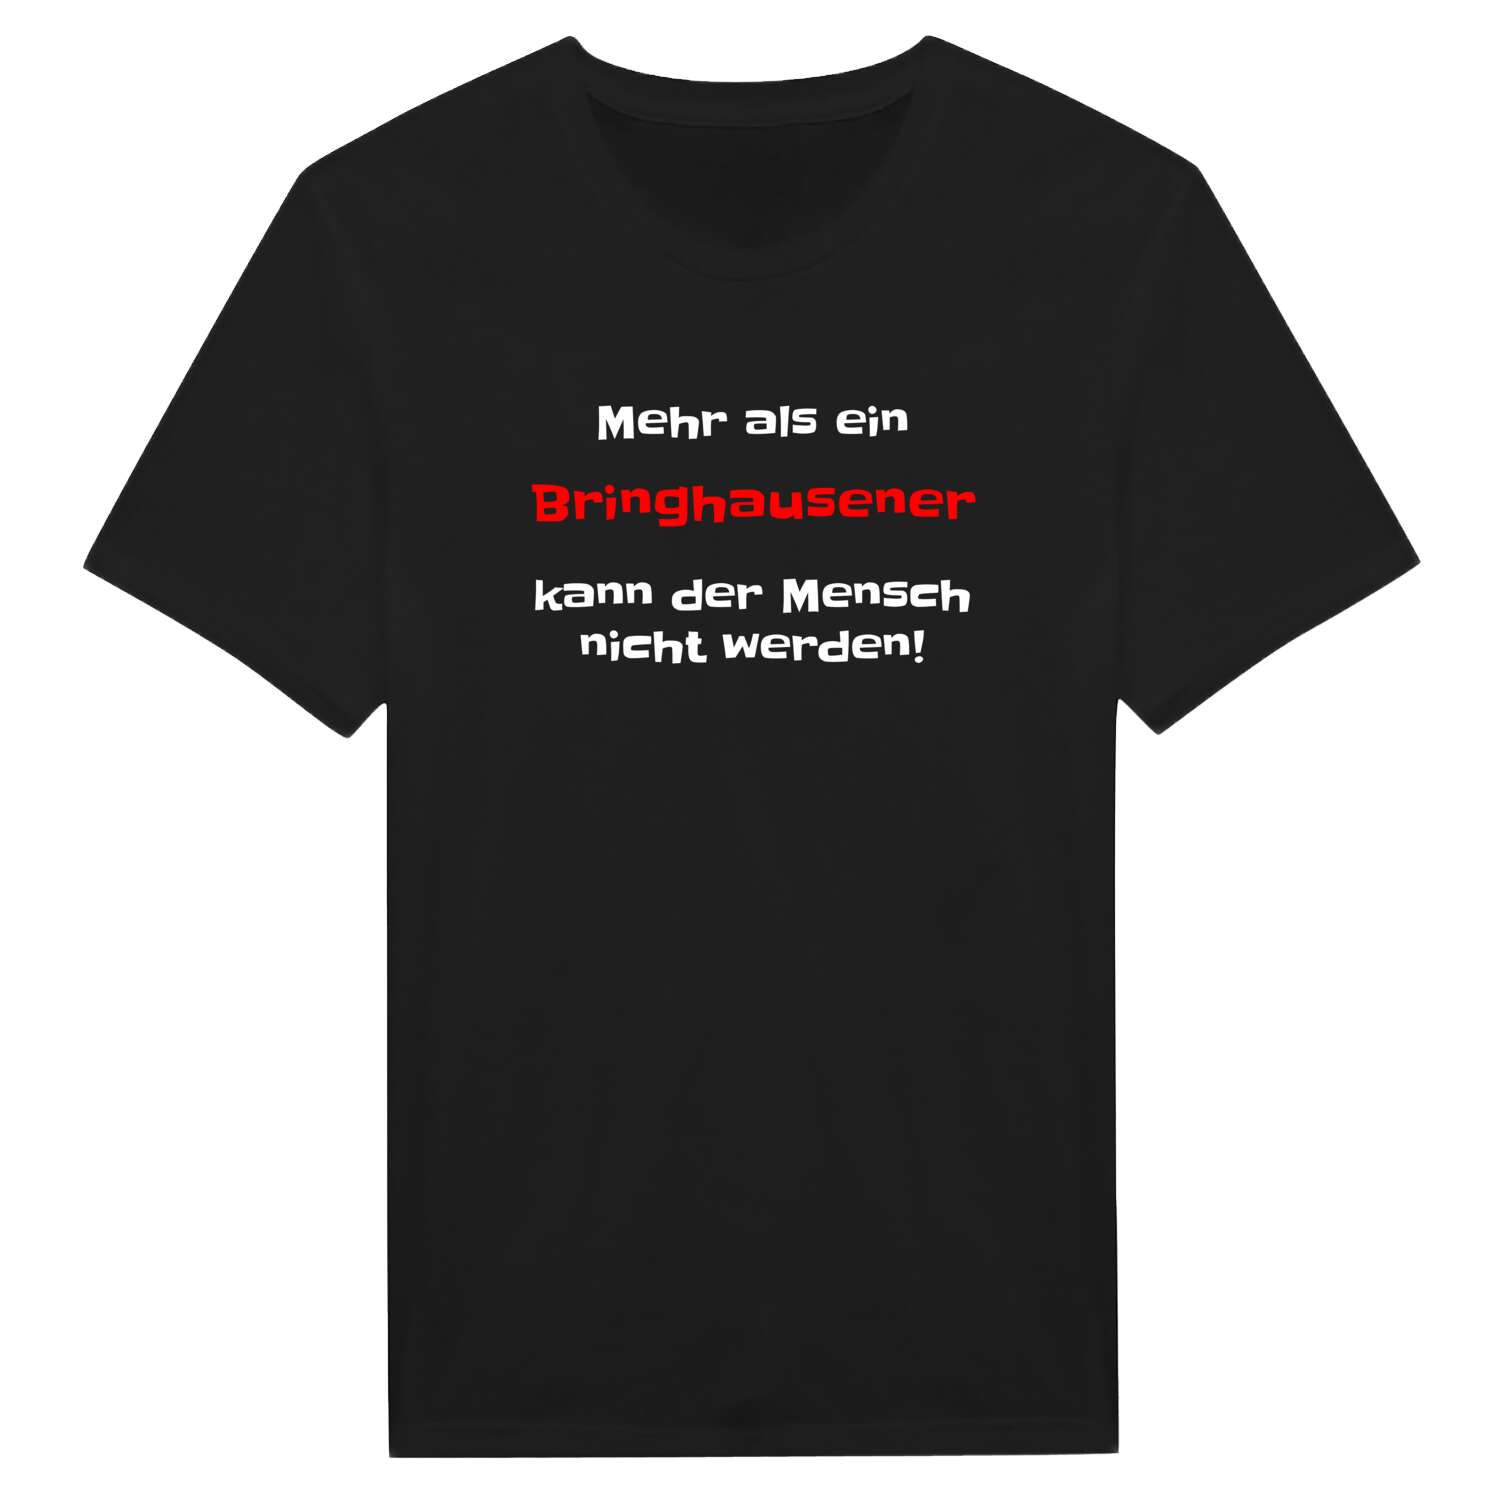 Bringhausen T-Shirt »Mehr als ein«